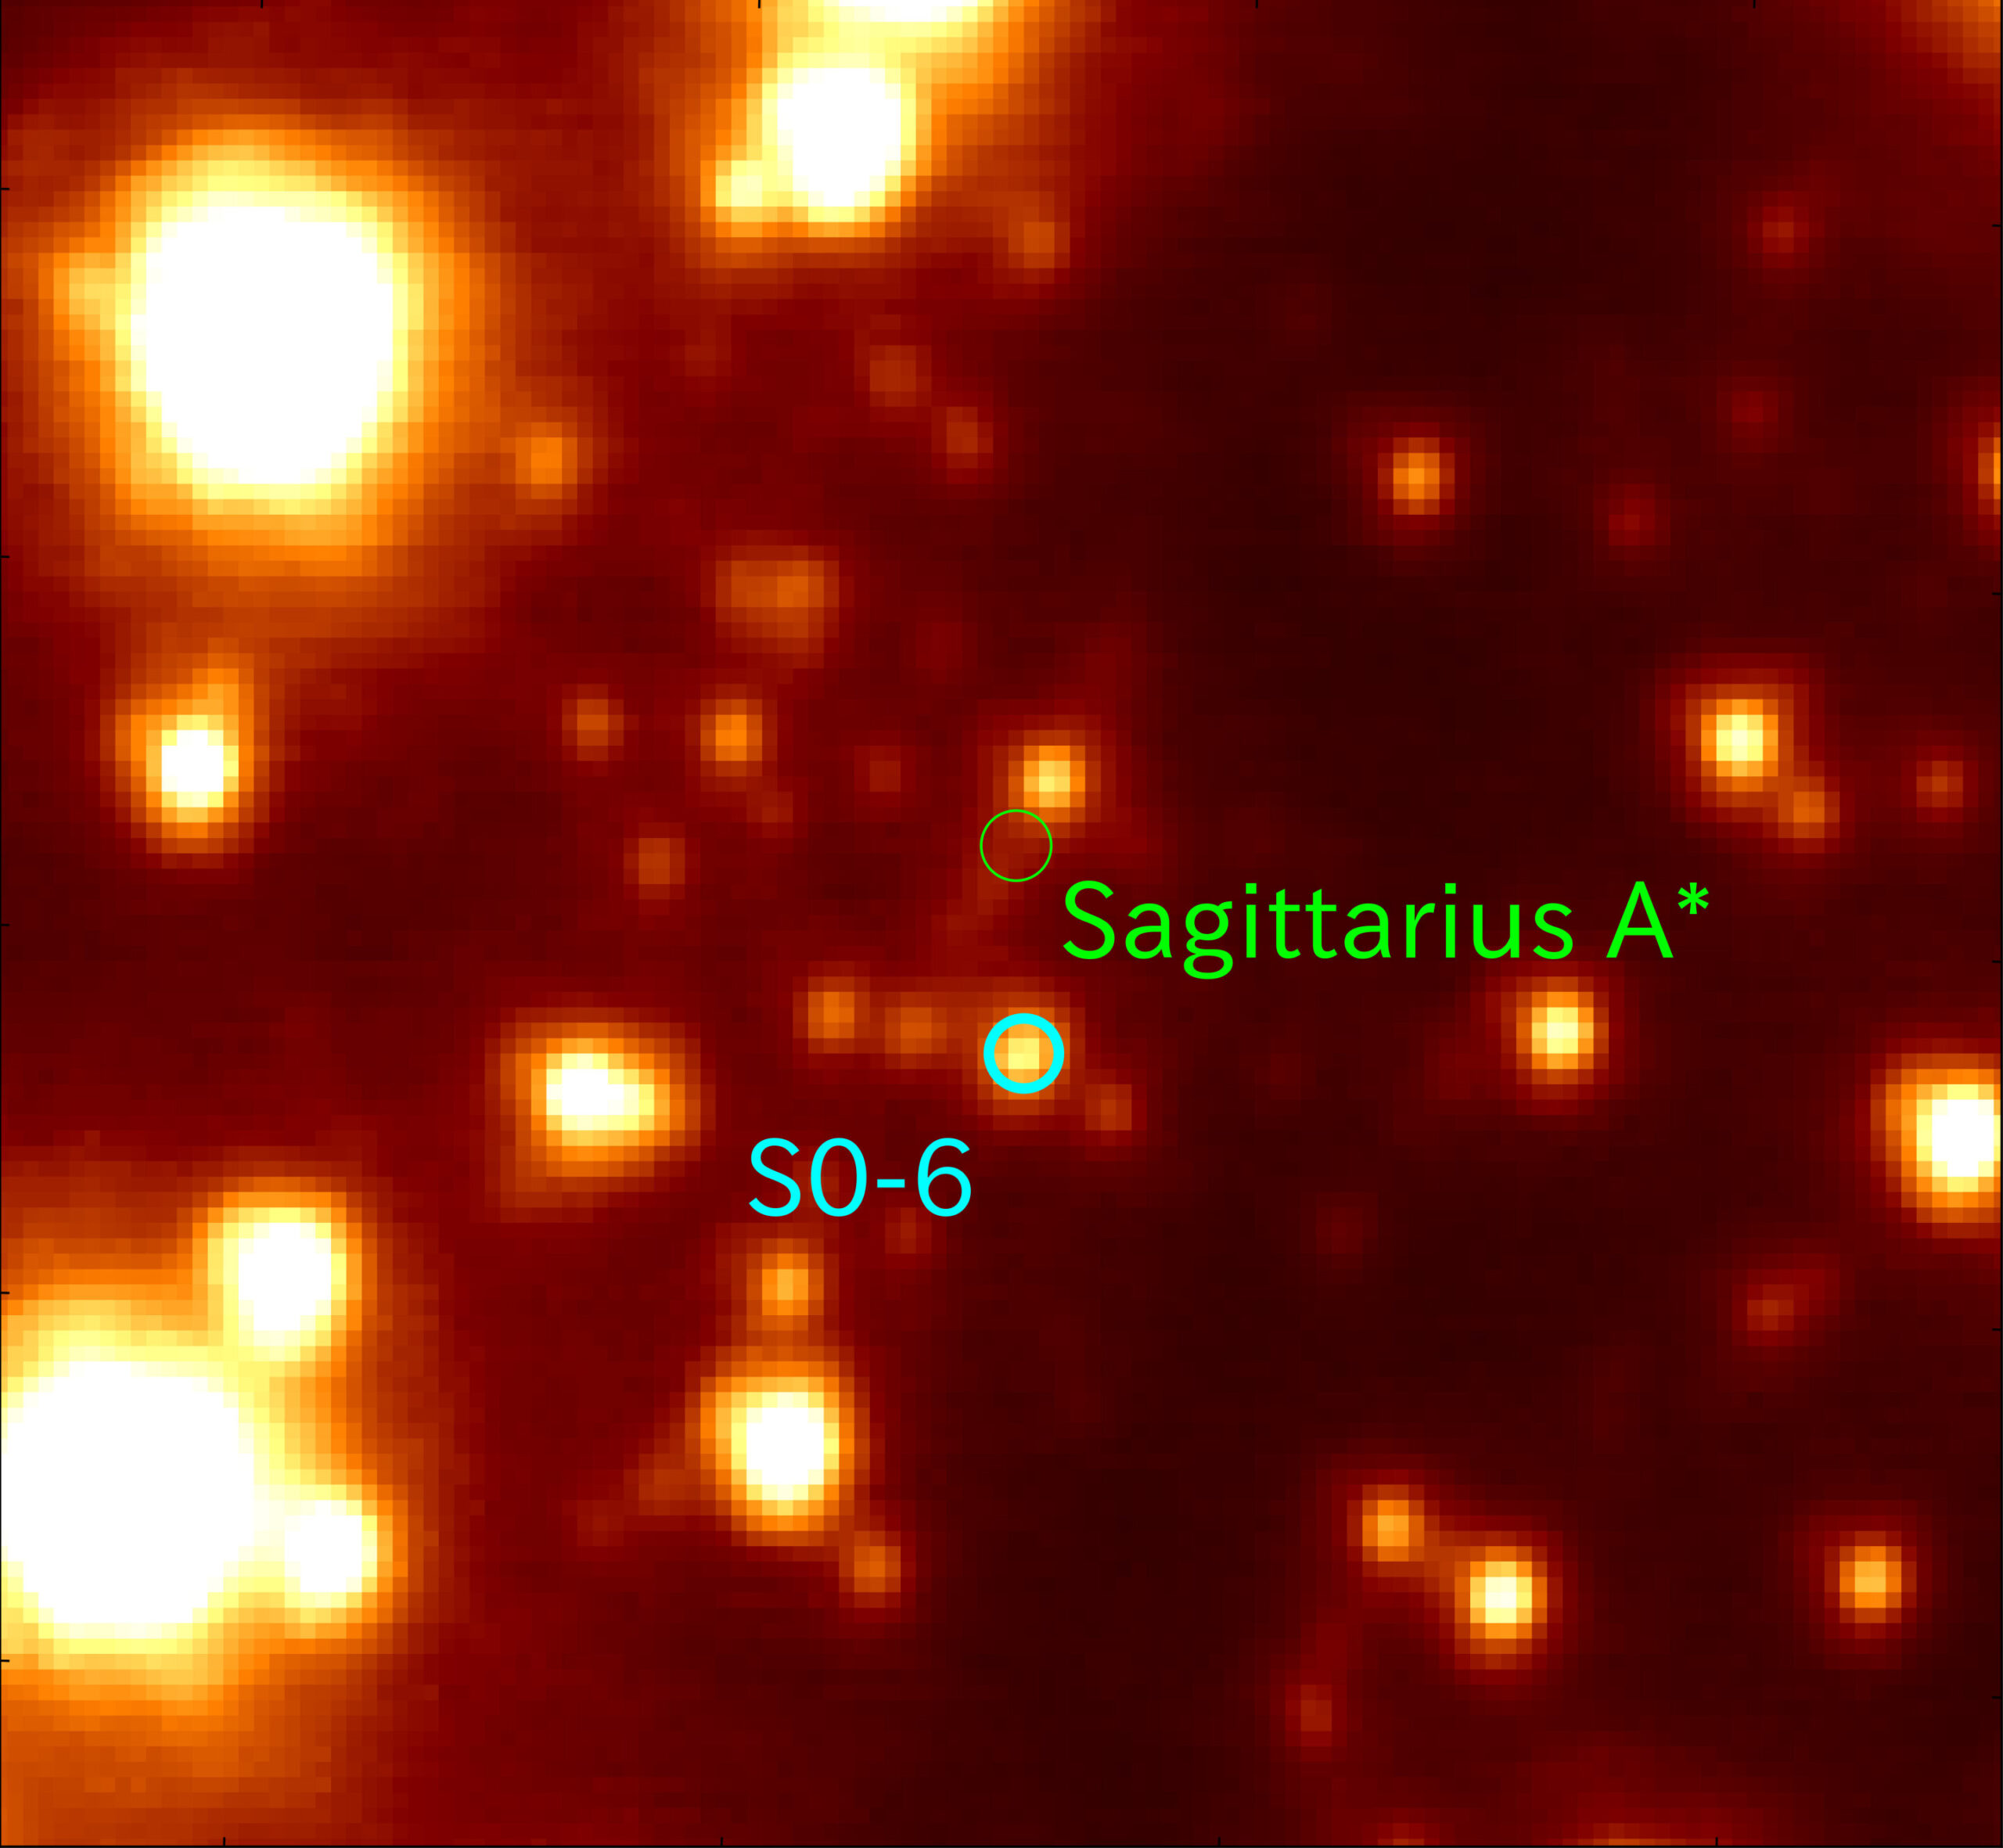 Звезда S0-6 (синий круг) расположена на расстоянии около 0,04 световых лет от сверхмассивной черной дыры Стрельца A*.